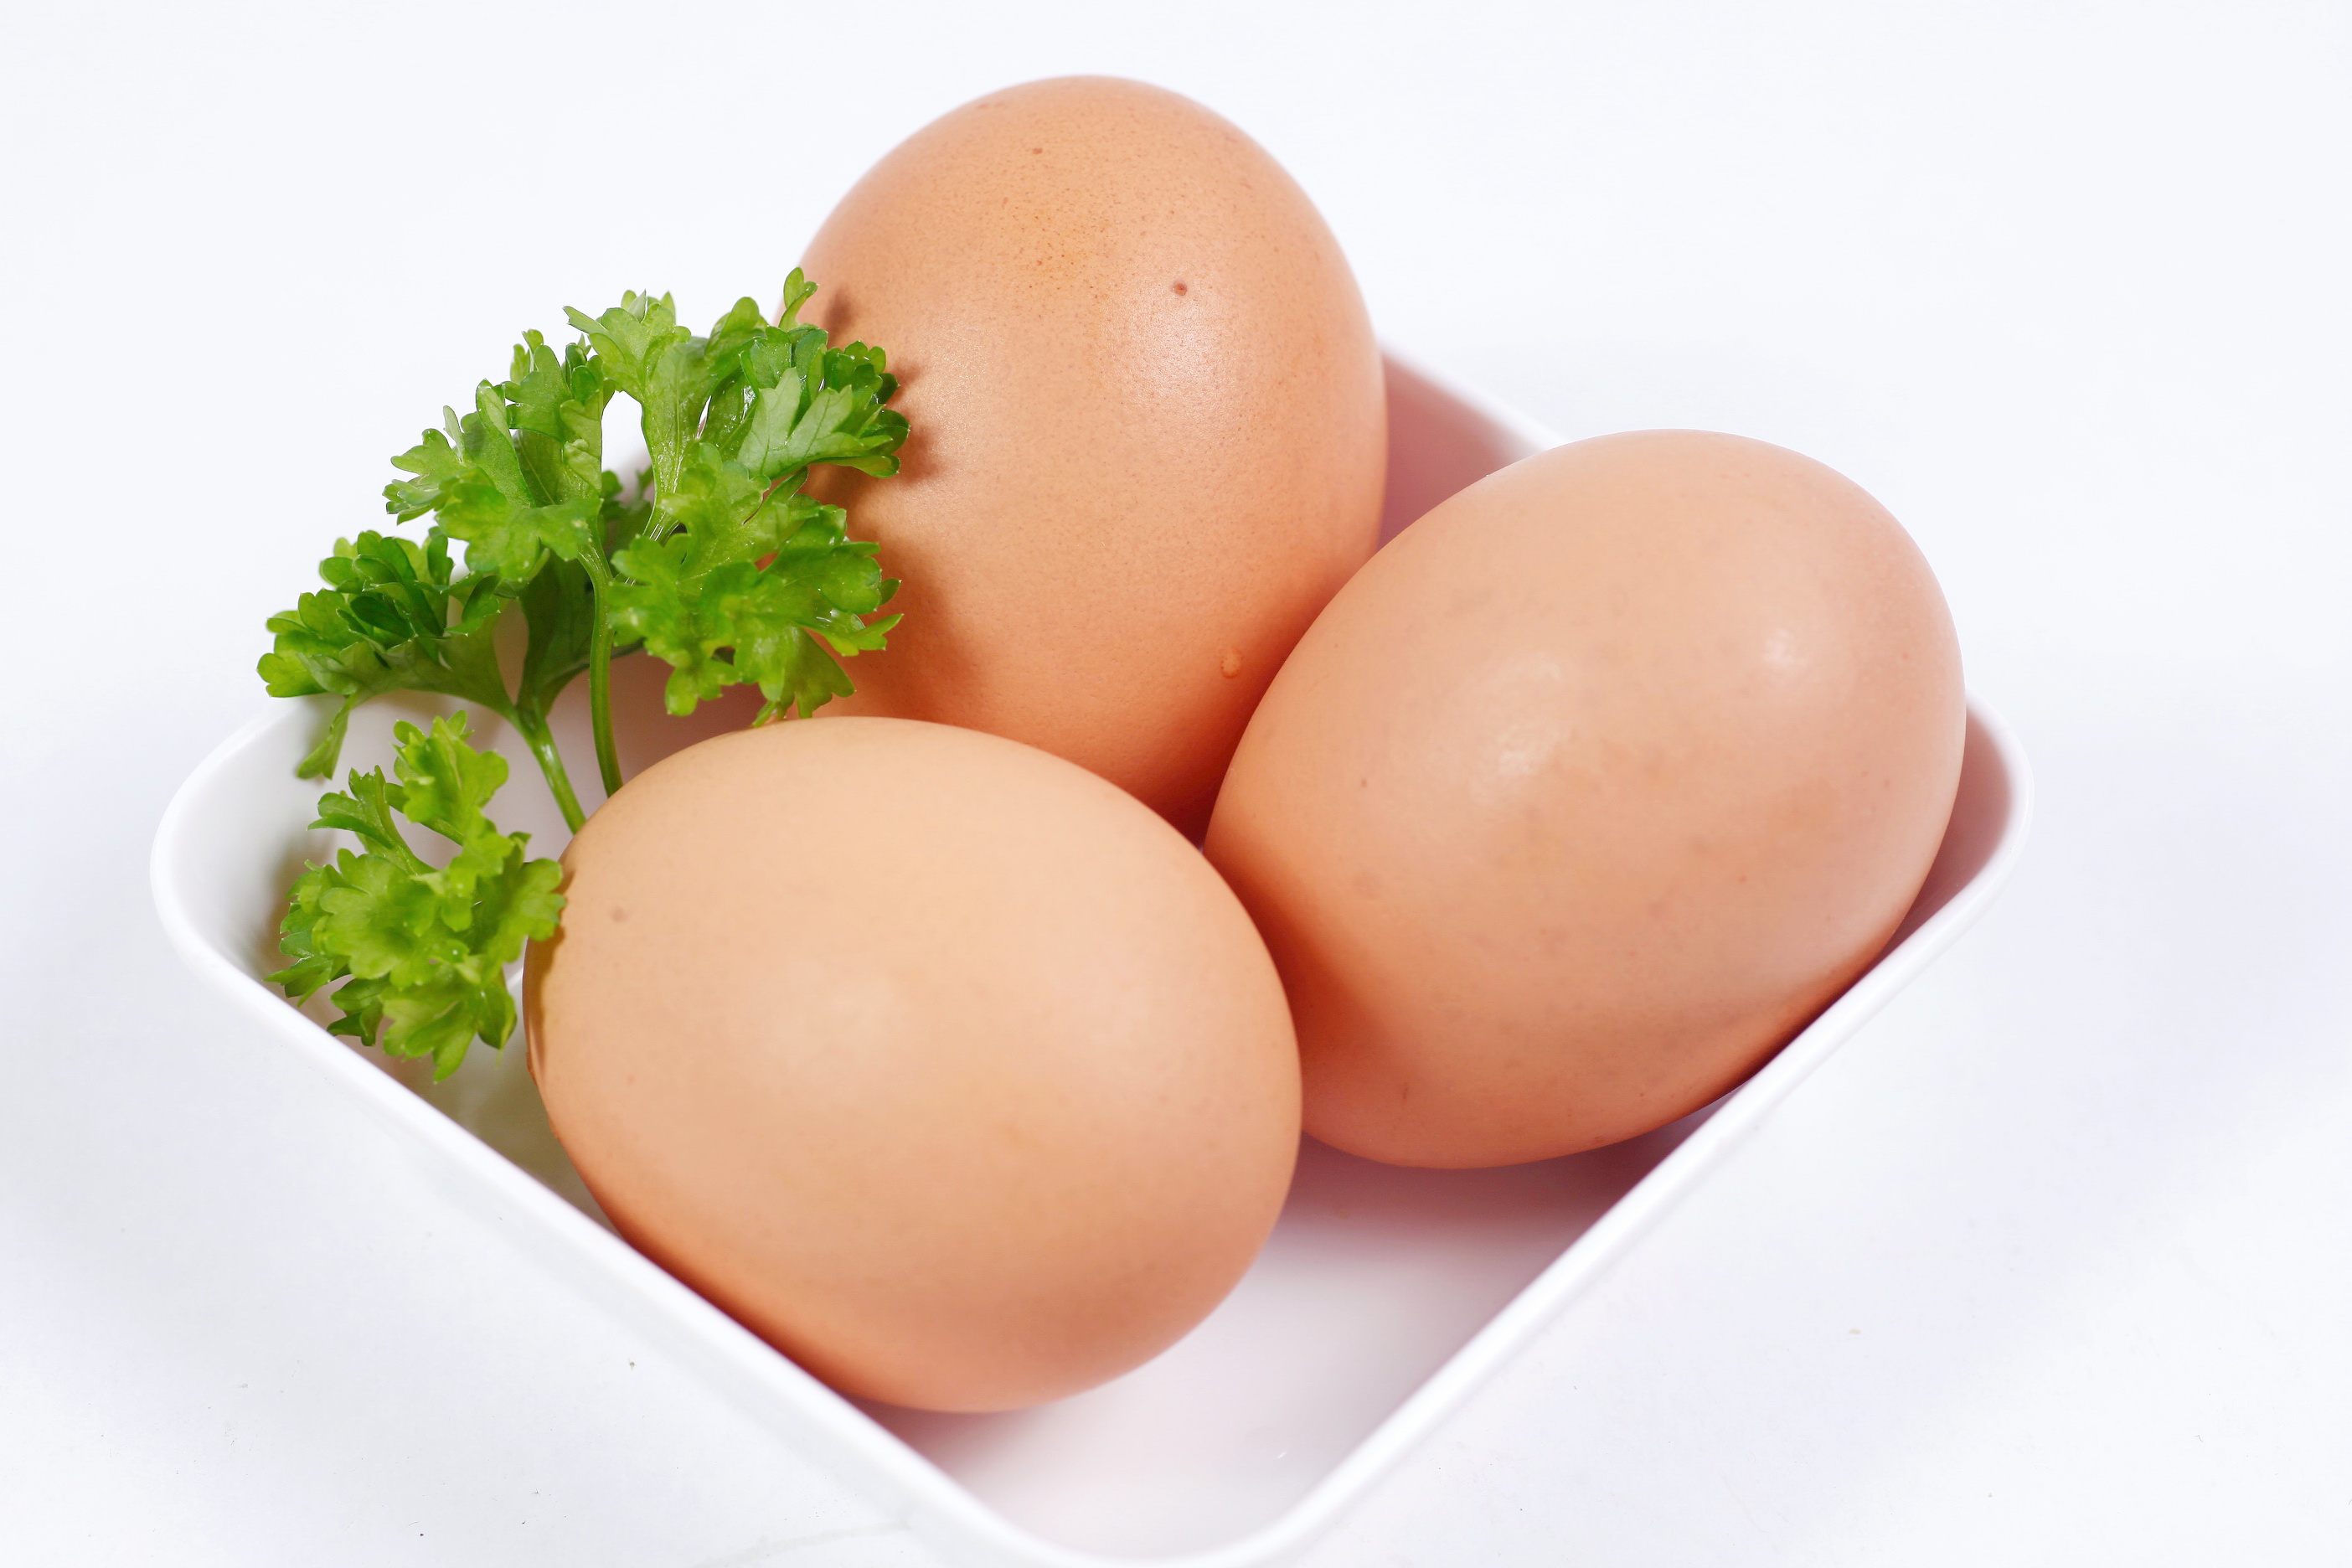 Thành phần dinh dưỡng trong trứng dồi dào và đa dạng